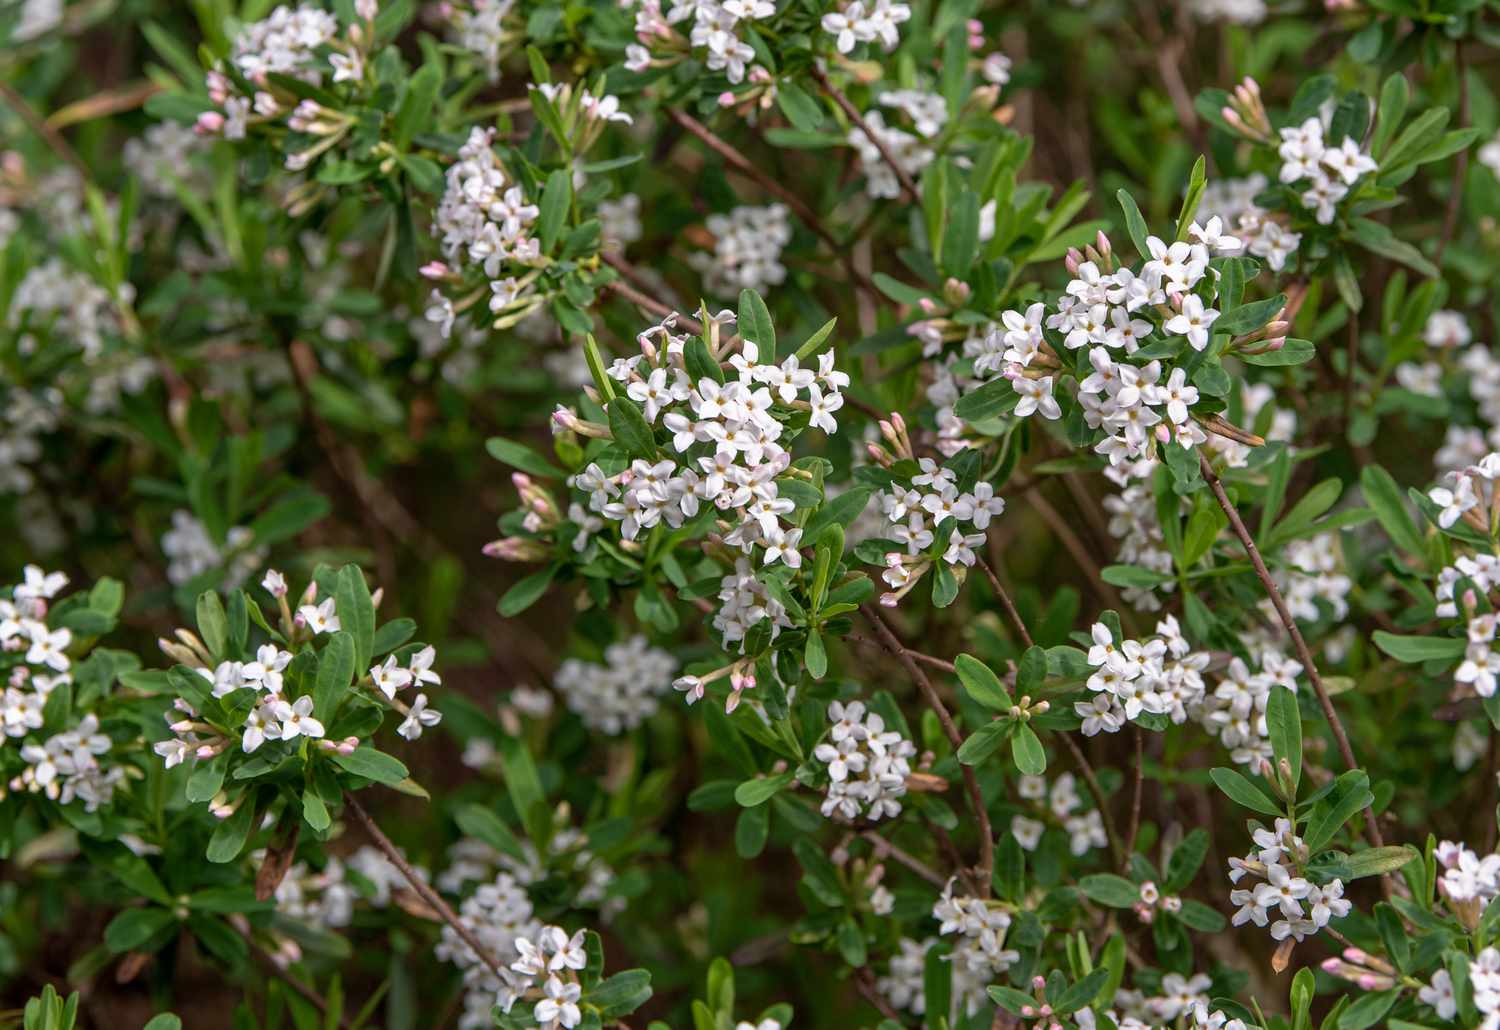 Daphne-Pflanze mit winzigen weißen Blüten an Zweigen mit kurzen ovalen Blättern